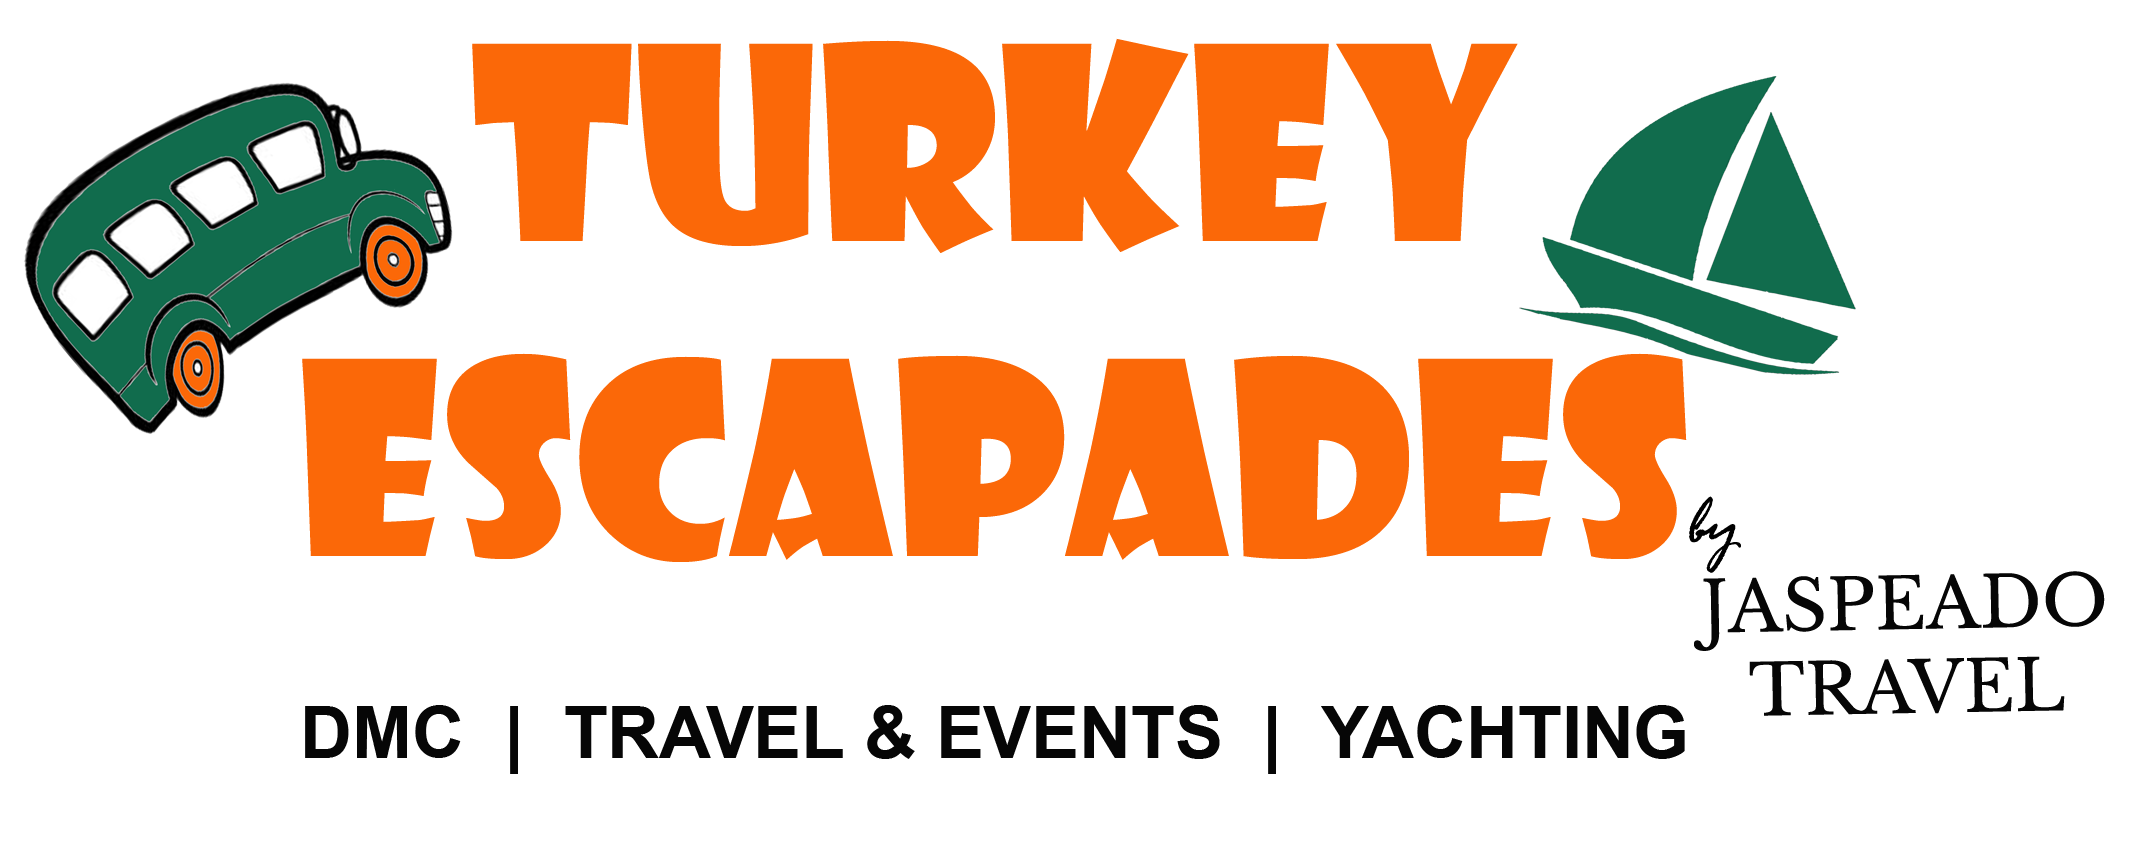 Turkey Escapades | Amazing Turkey Tour - 9 Days Private Group Tour - Turkey Escapades